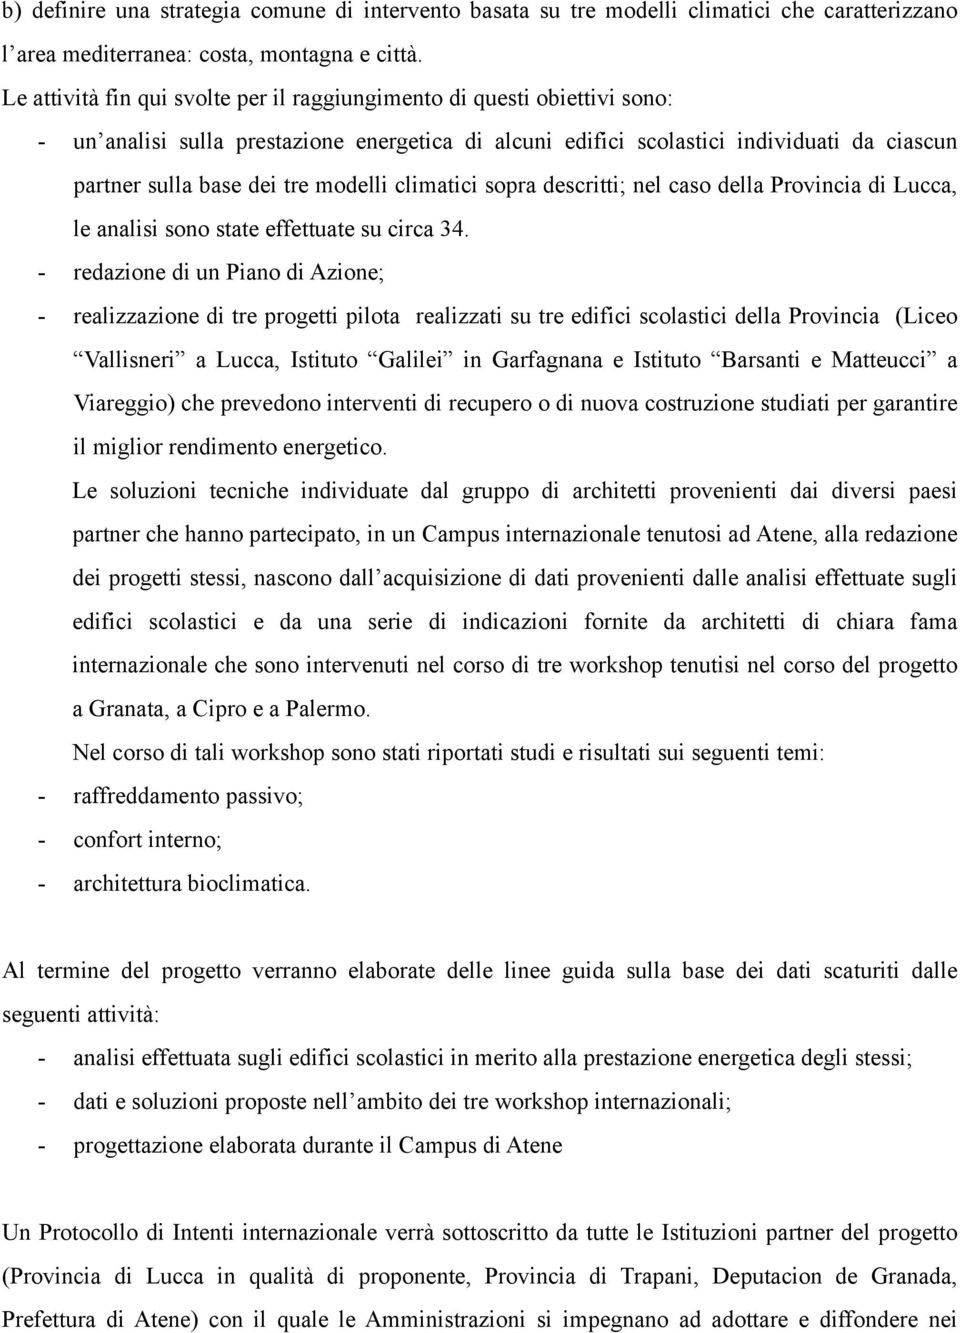 modelli climatici sopra descritti; nel caso della Provincia di Lucca, le analisi sono state effettuate su circa 34.